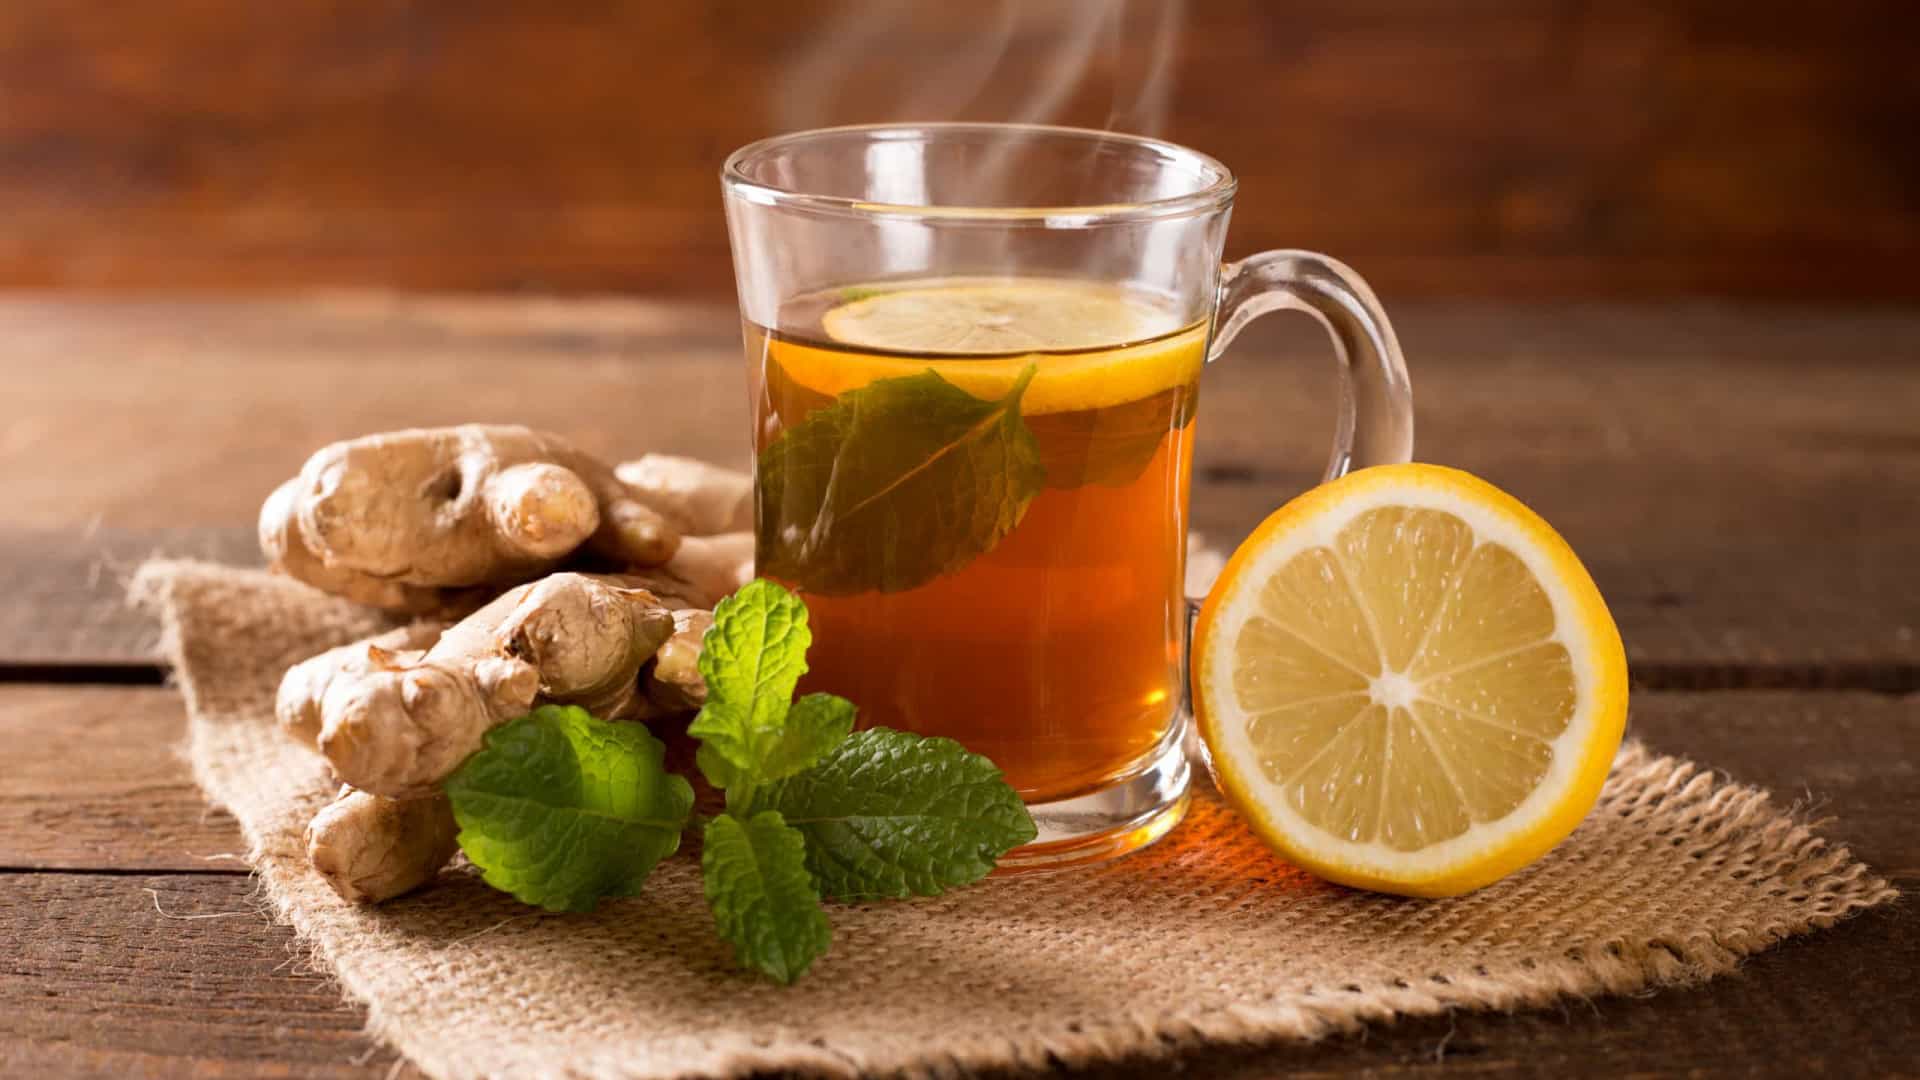 Emagrecer rápido: beba chá verde com chia e gengibre